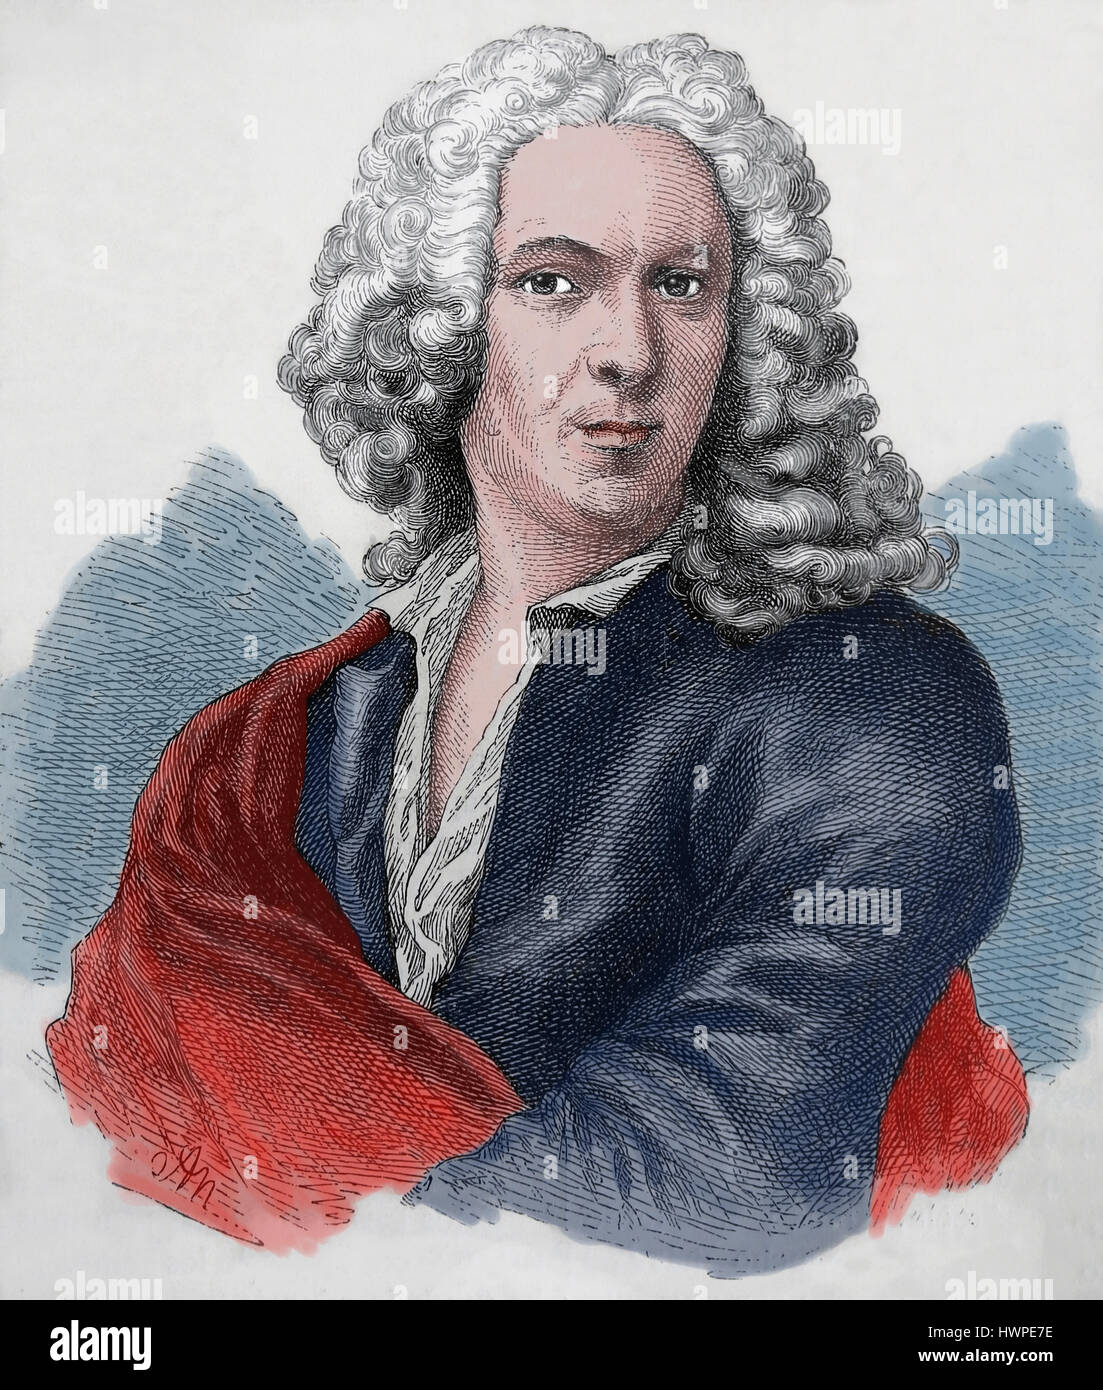 Carl von Linné (1707-1778). Schwedischer Botaniker, Arzt und Zoologe. Porträt. Kupferstich, 1883. Farbe. Stockfoto